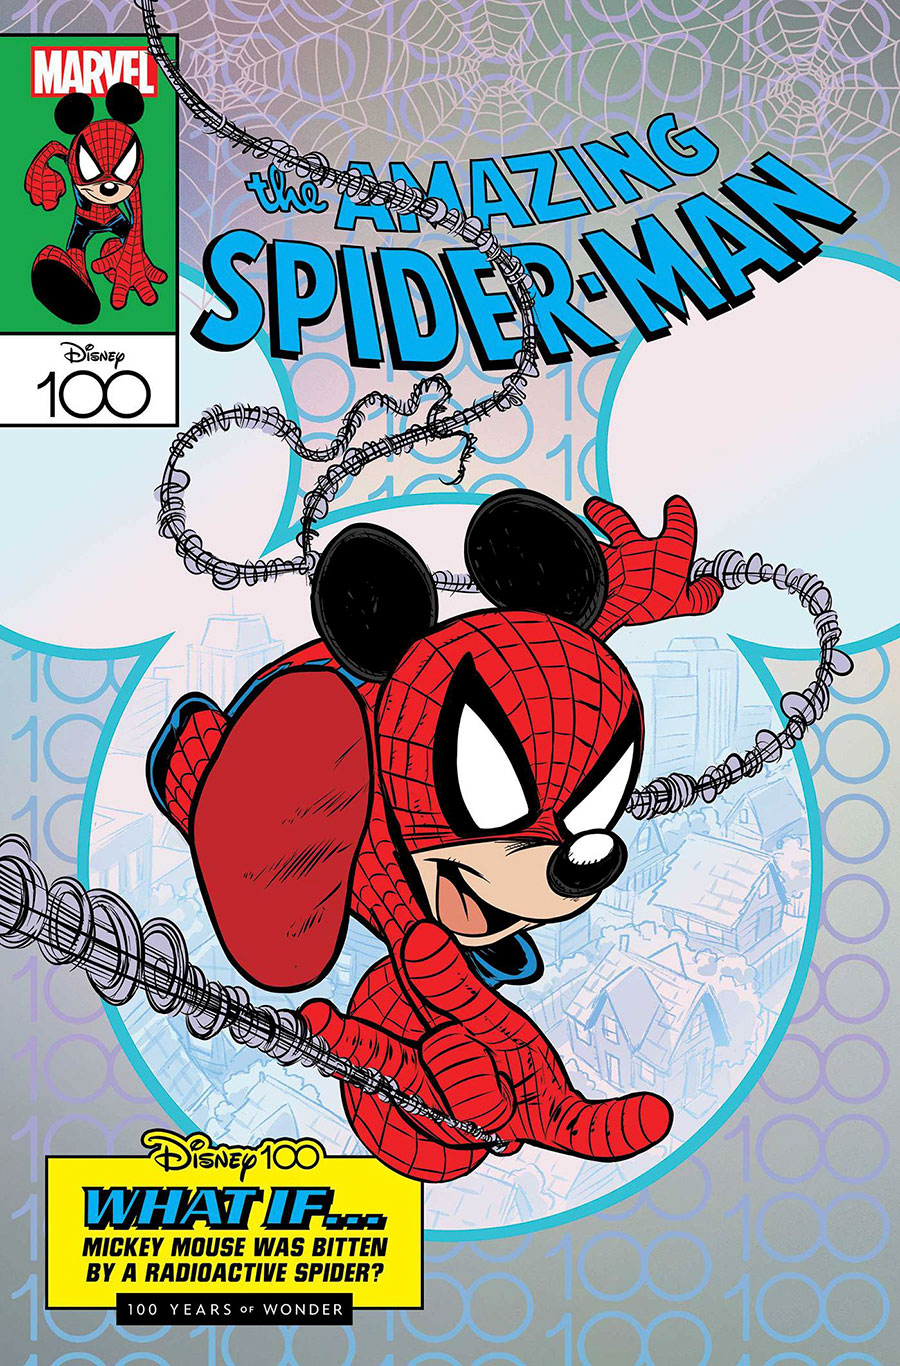 Amazing Spider-Man Vol 6 #35 Cover B Variant Claudio Sciarrone Disney100 Amazing Spider-Man Cover